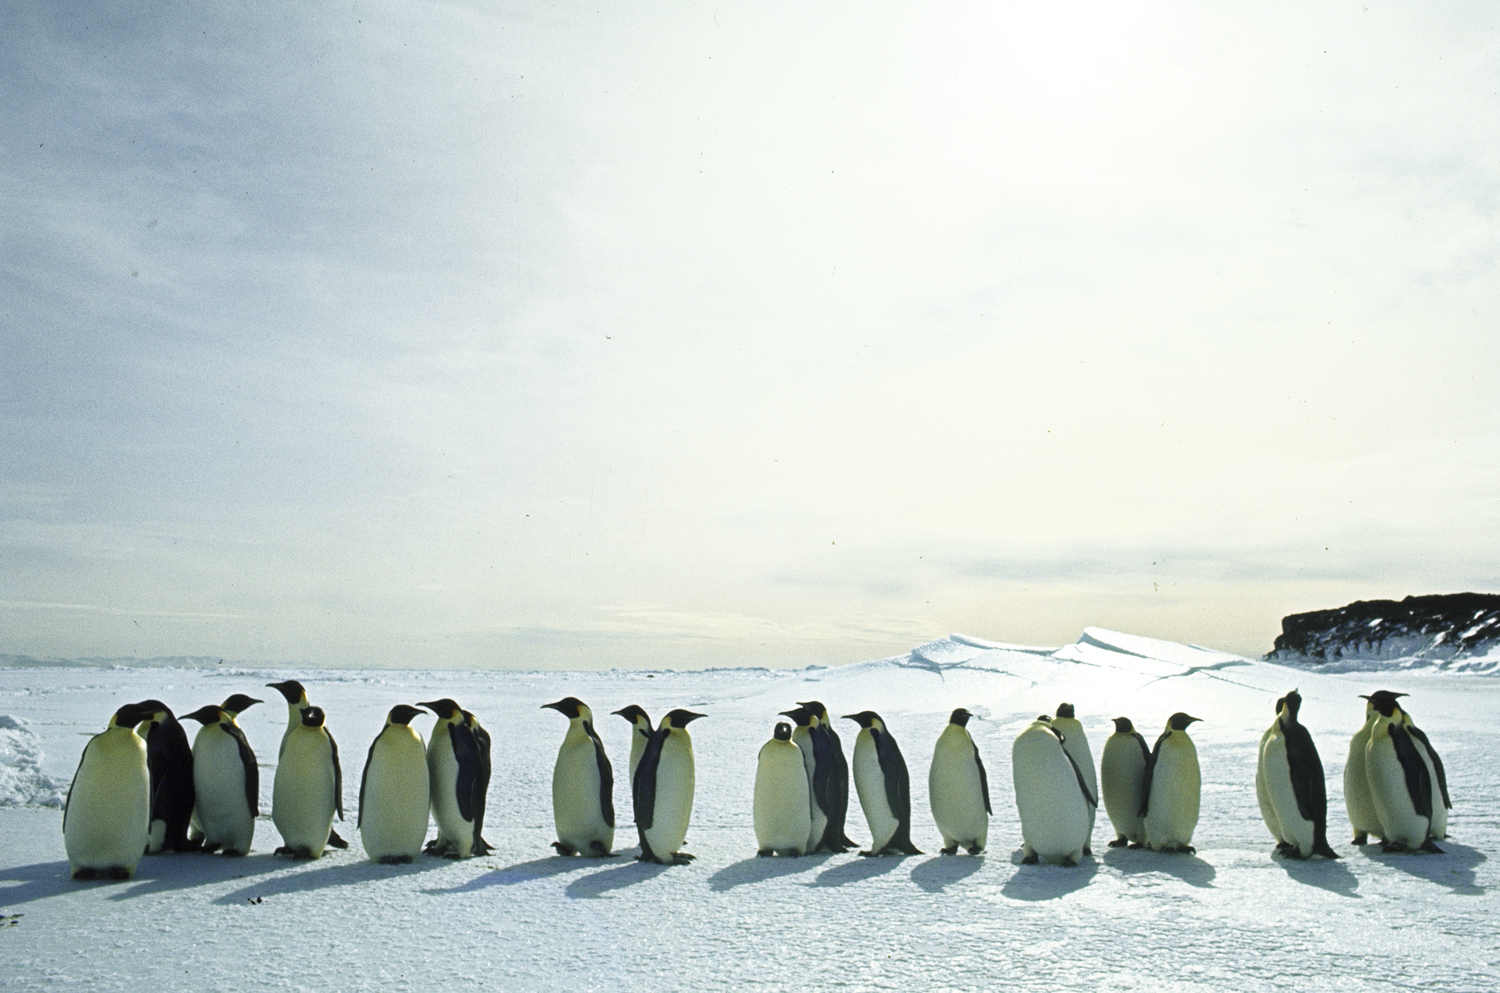 Penguins, Antarctica, 1964.